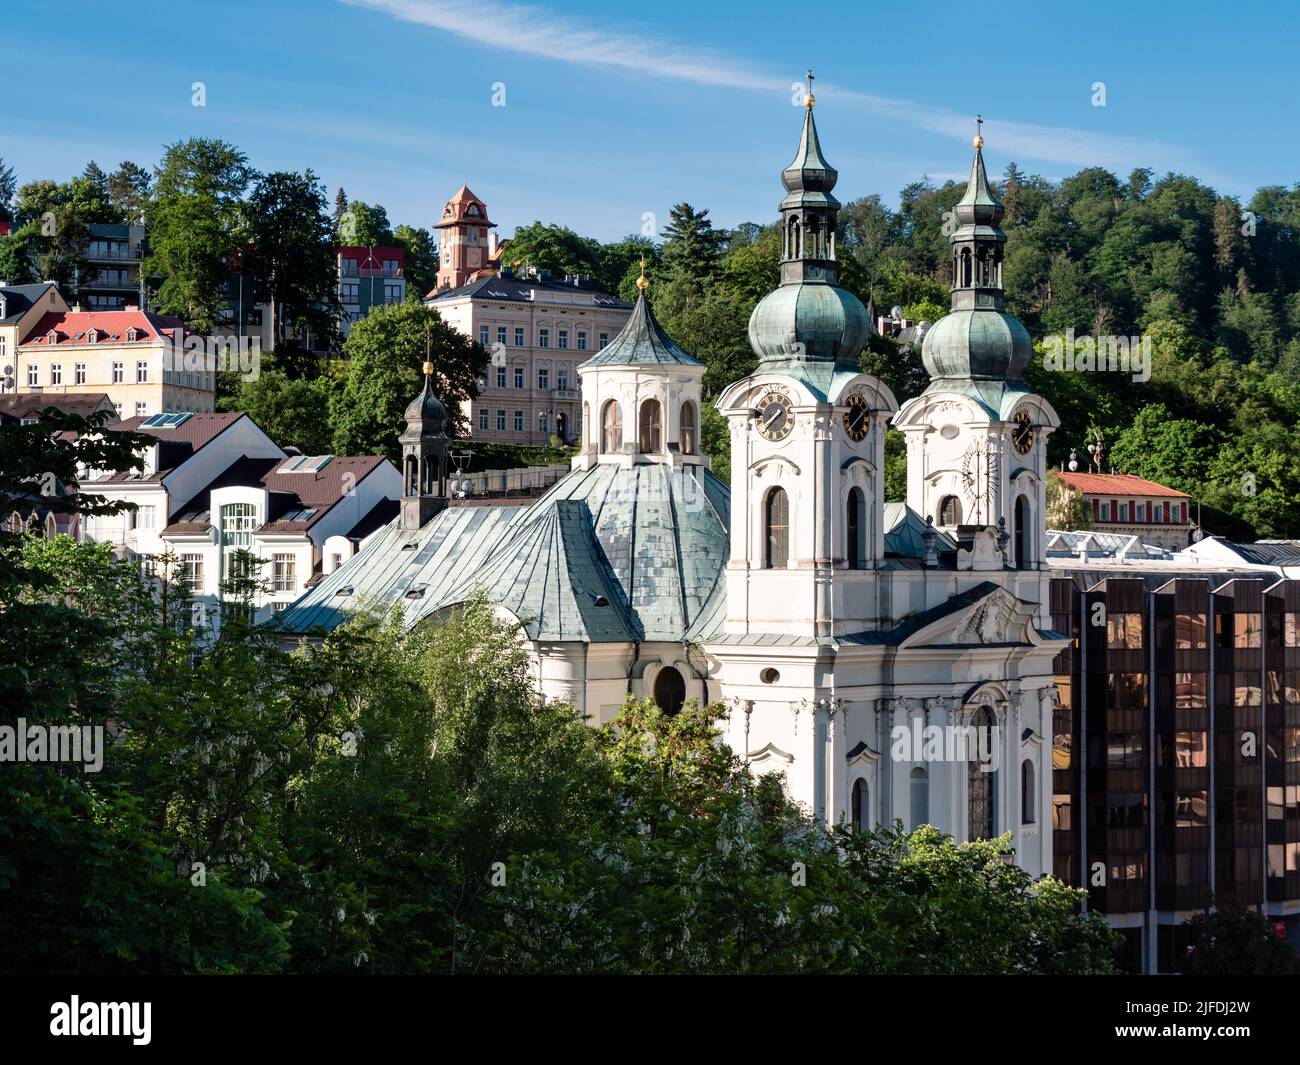 Kirche der Heiligen Maria Magdalena in Karlovy Vary, Böhmen, Tschechische Republik, eine hochbarocke katholische Kirche, die von Kilian Ignac Dientzenhofer entworfen wurde Stockfoto